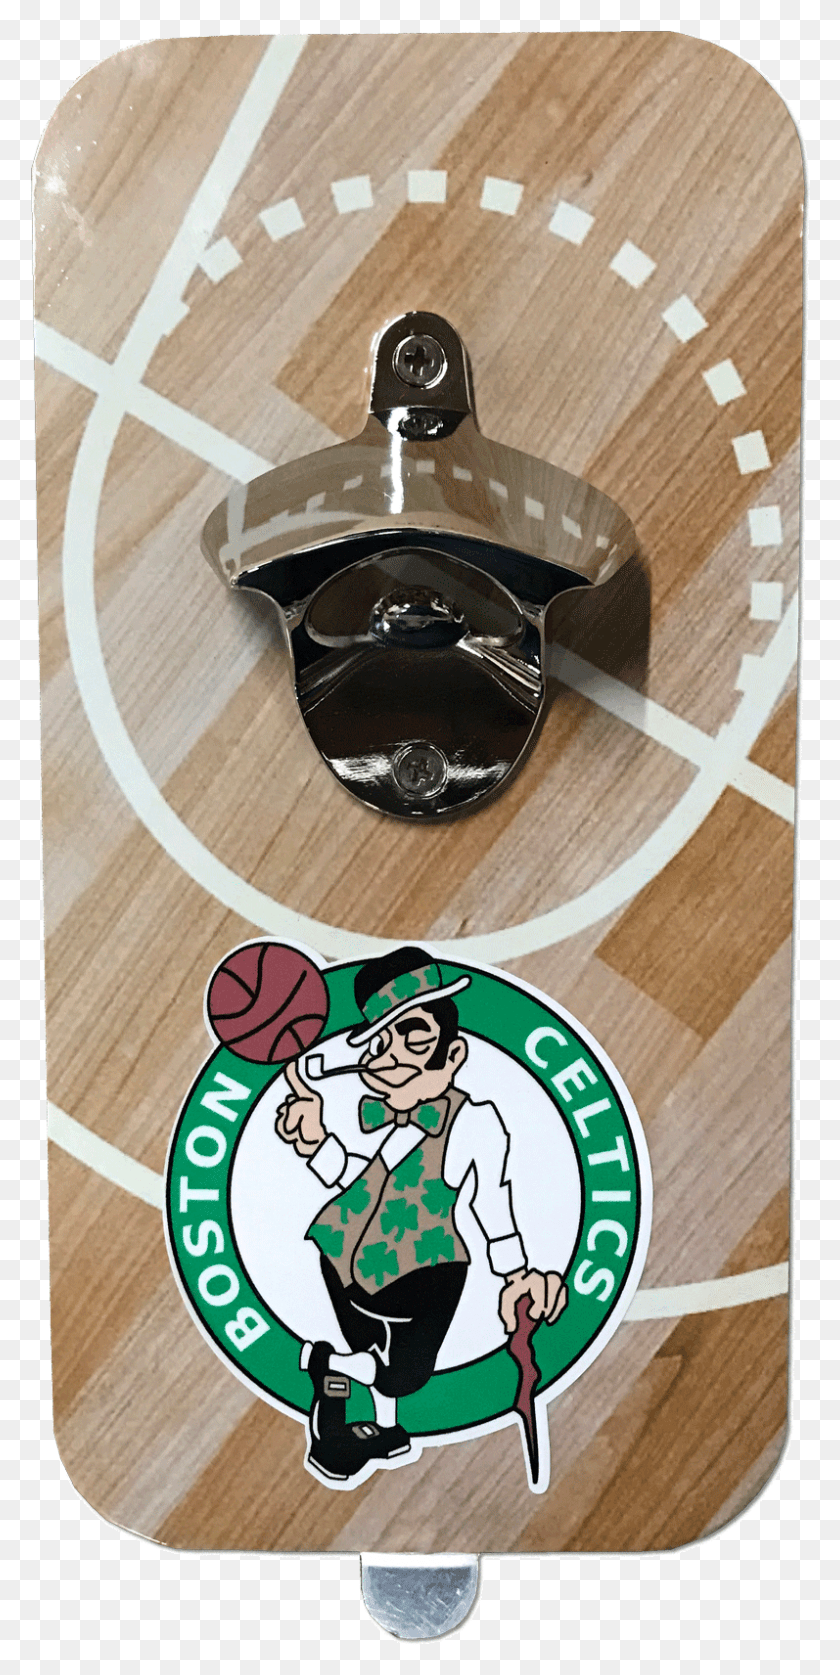 797x1651 Descargar Png Picture Of Boston Celtics De La Nba Juego De Abridores De Boston Celtics, Persona, Humano, Personas Hd Png